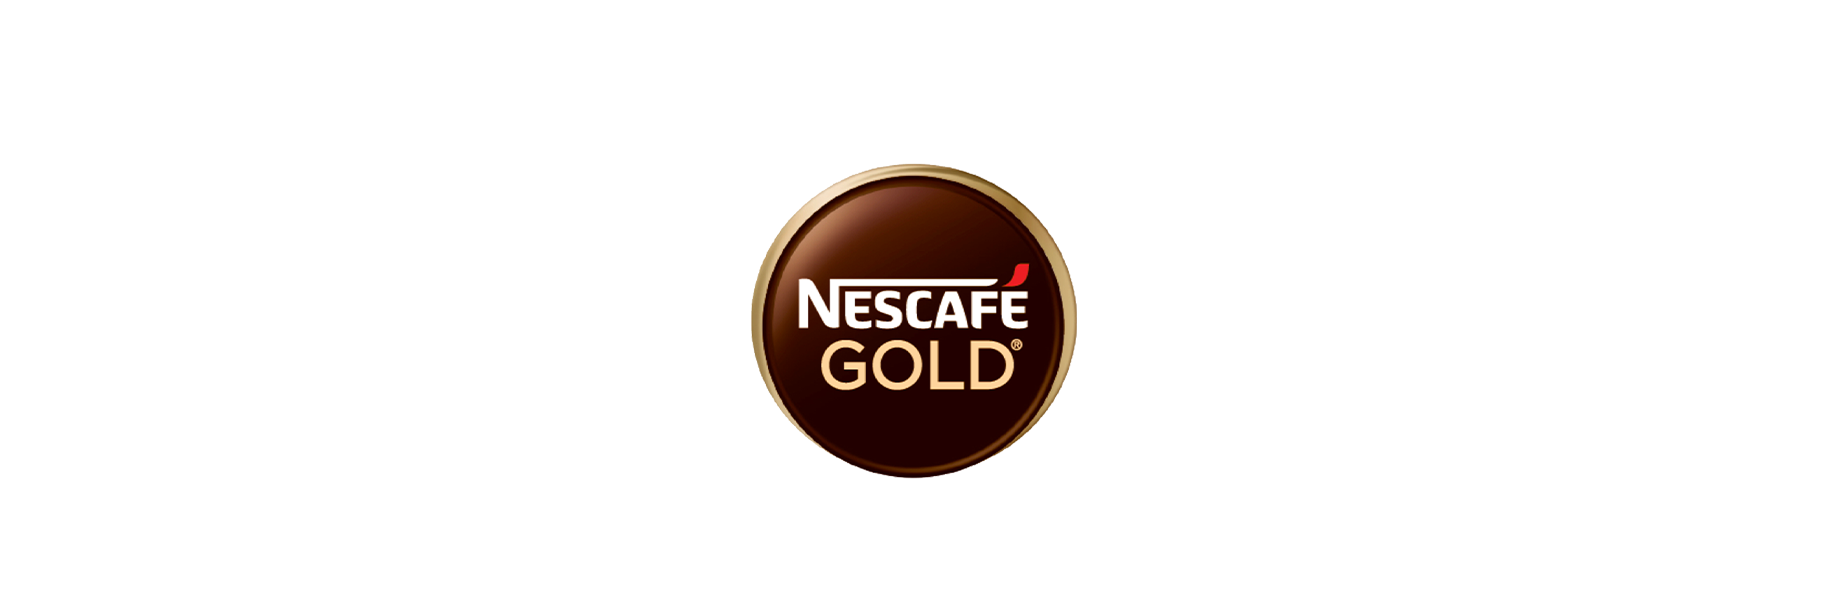 Diacritique du nouveau logo Nescafé | Identité de marque, Logos